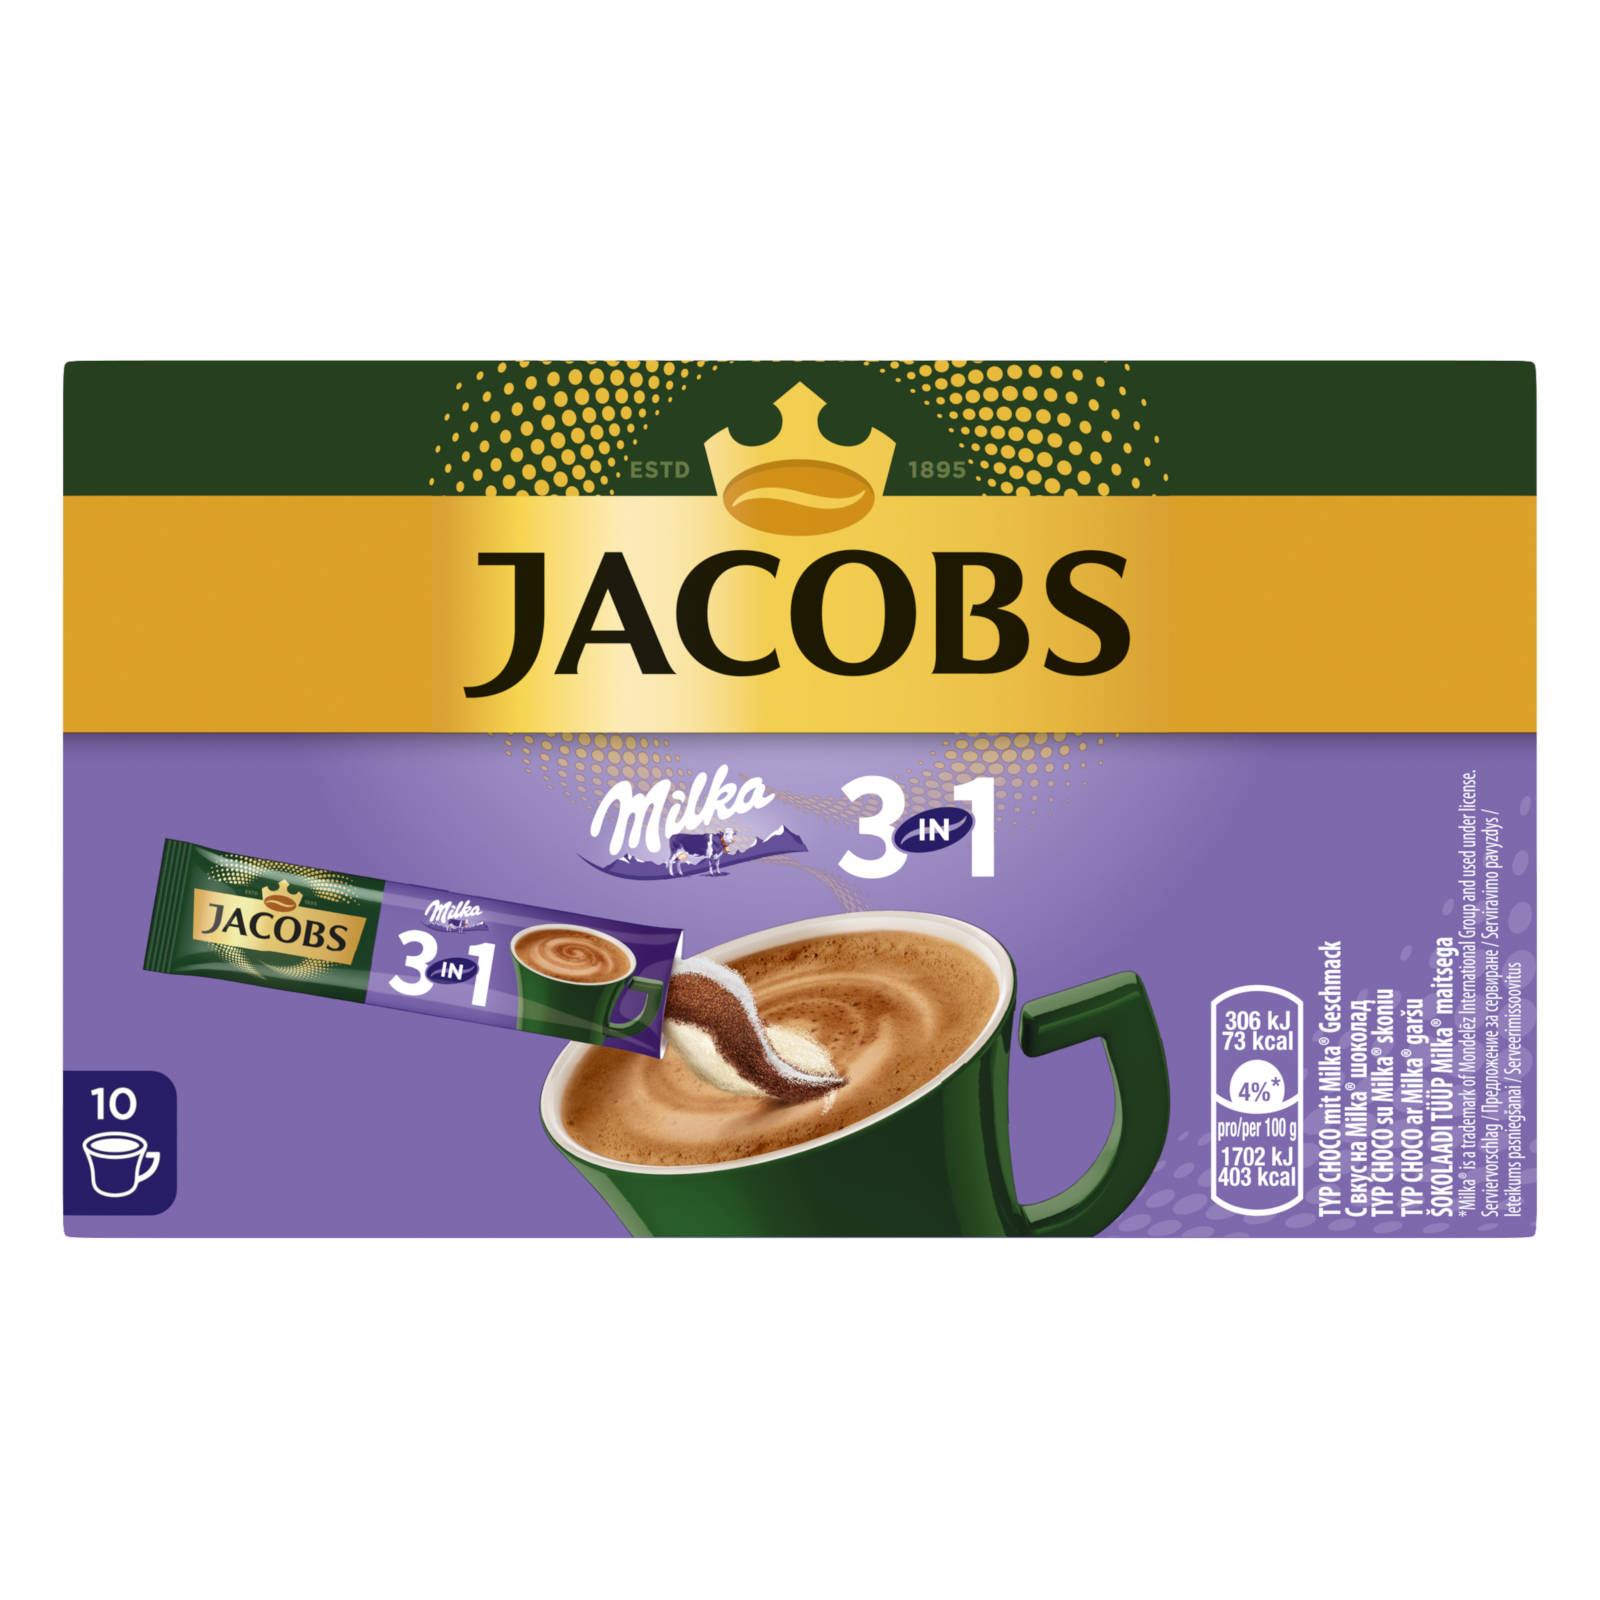 Wasser JACOBS Milka®* (In 12 heißem 3in1 Instantkaffee auflösen) 10 Sticks Getränke x